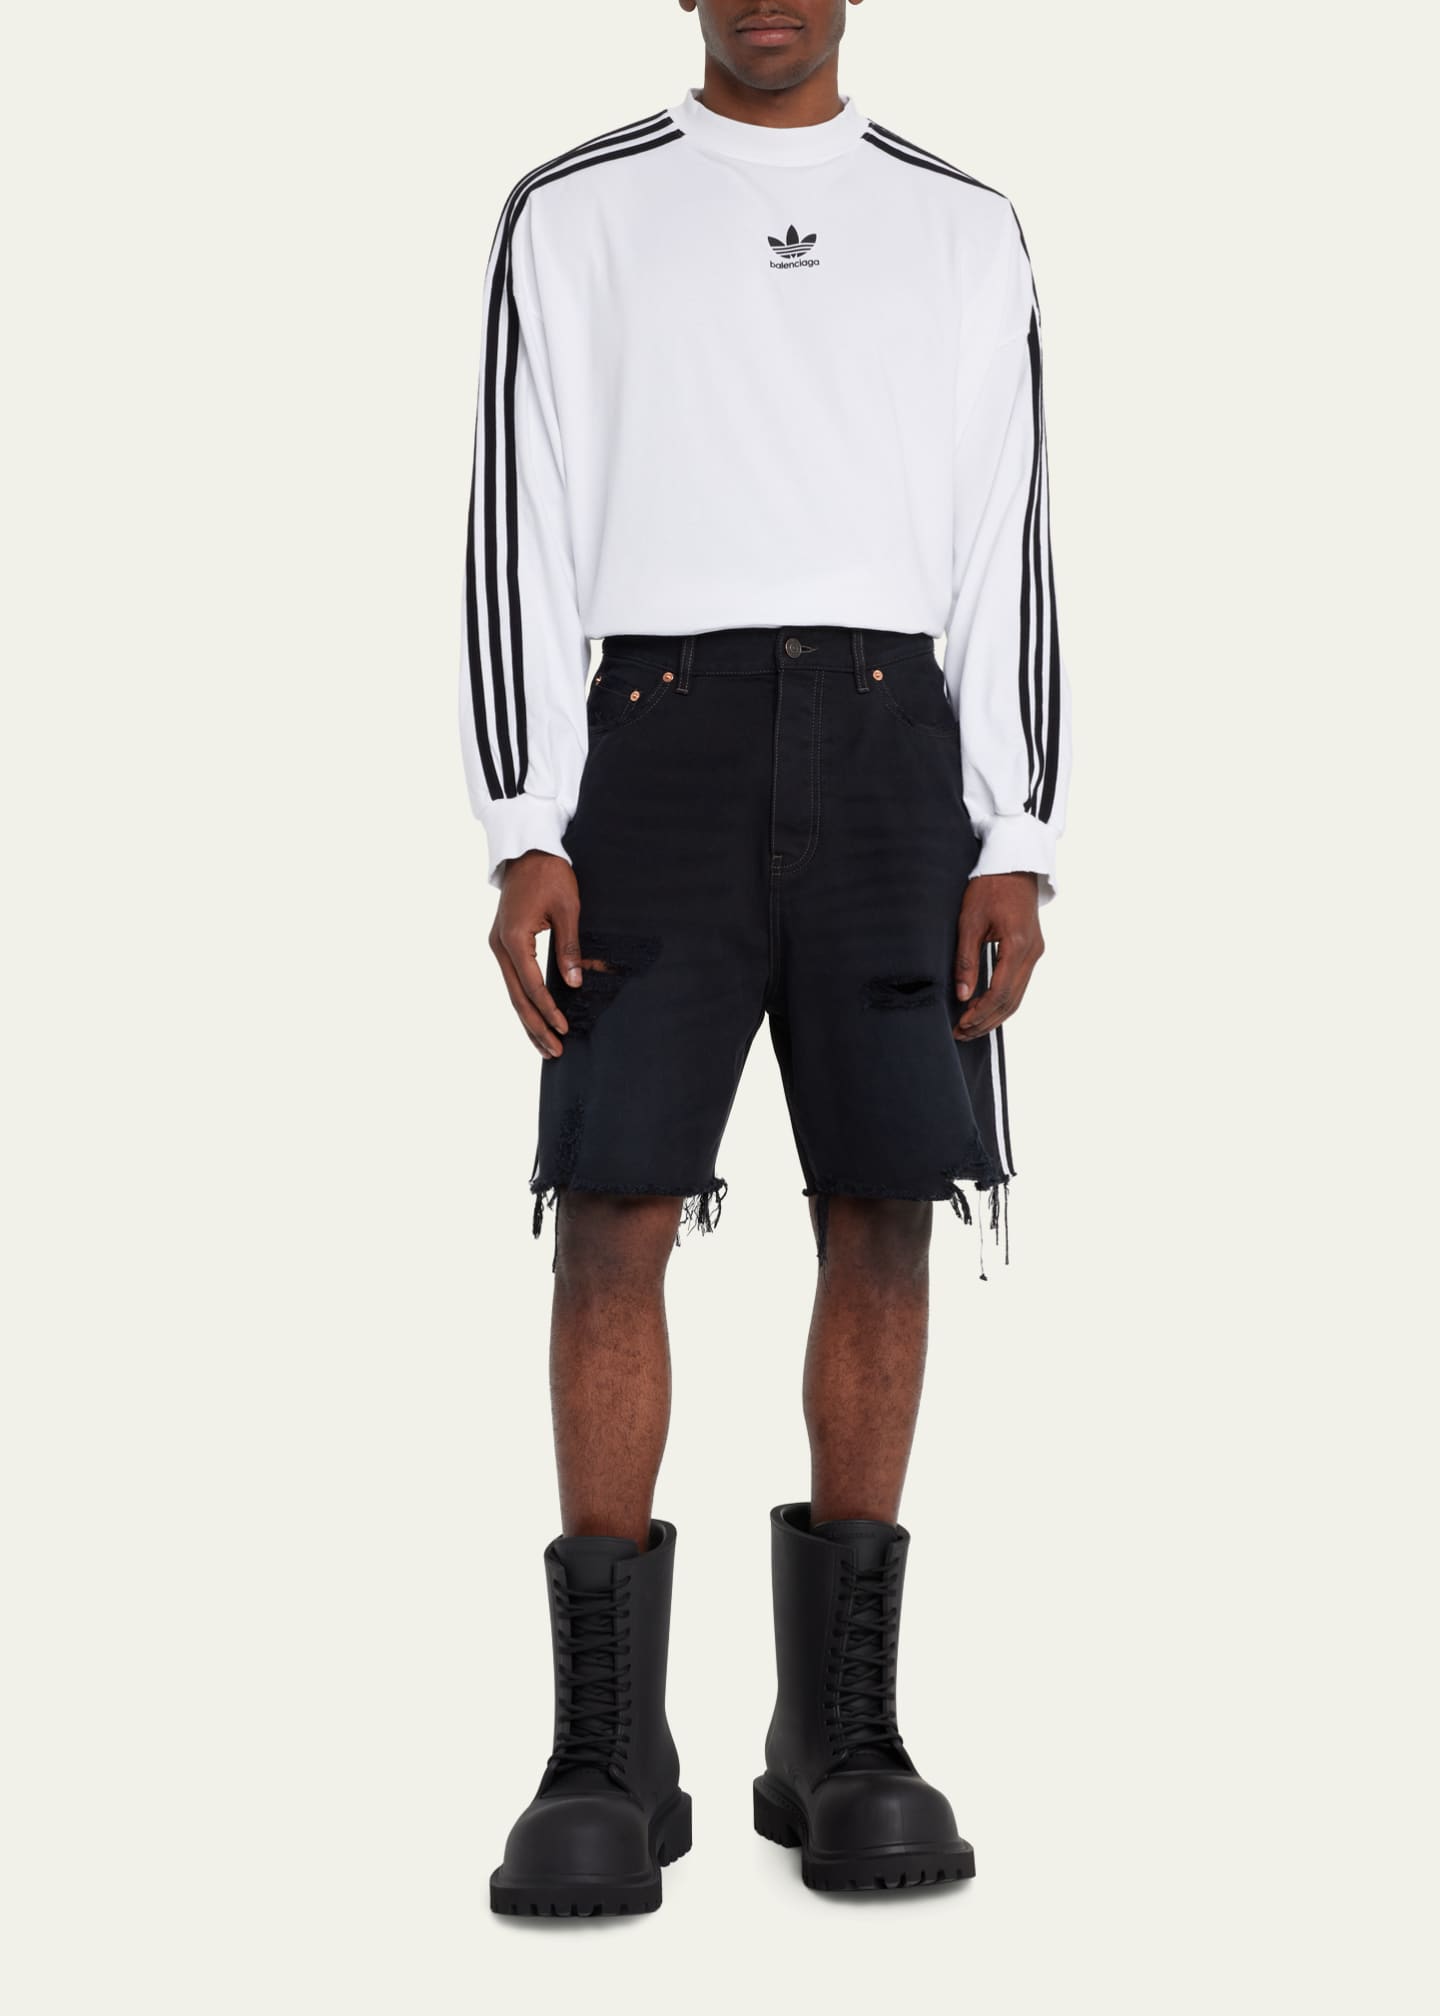 Balenciaga x Adidas Men's Denim Shorts - Bergdorf Goodman